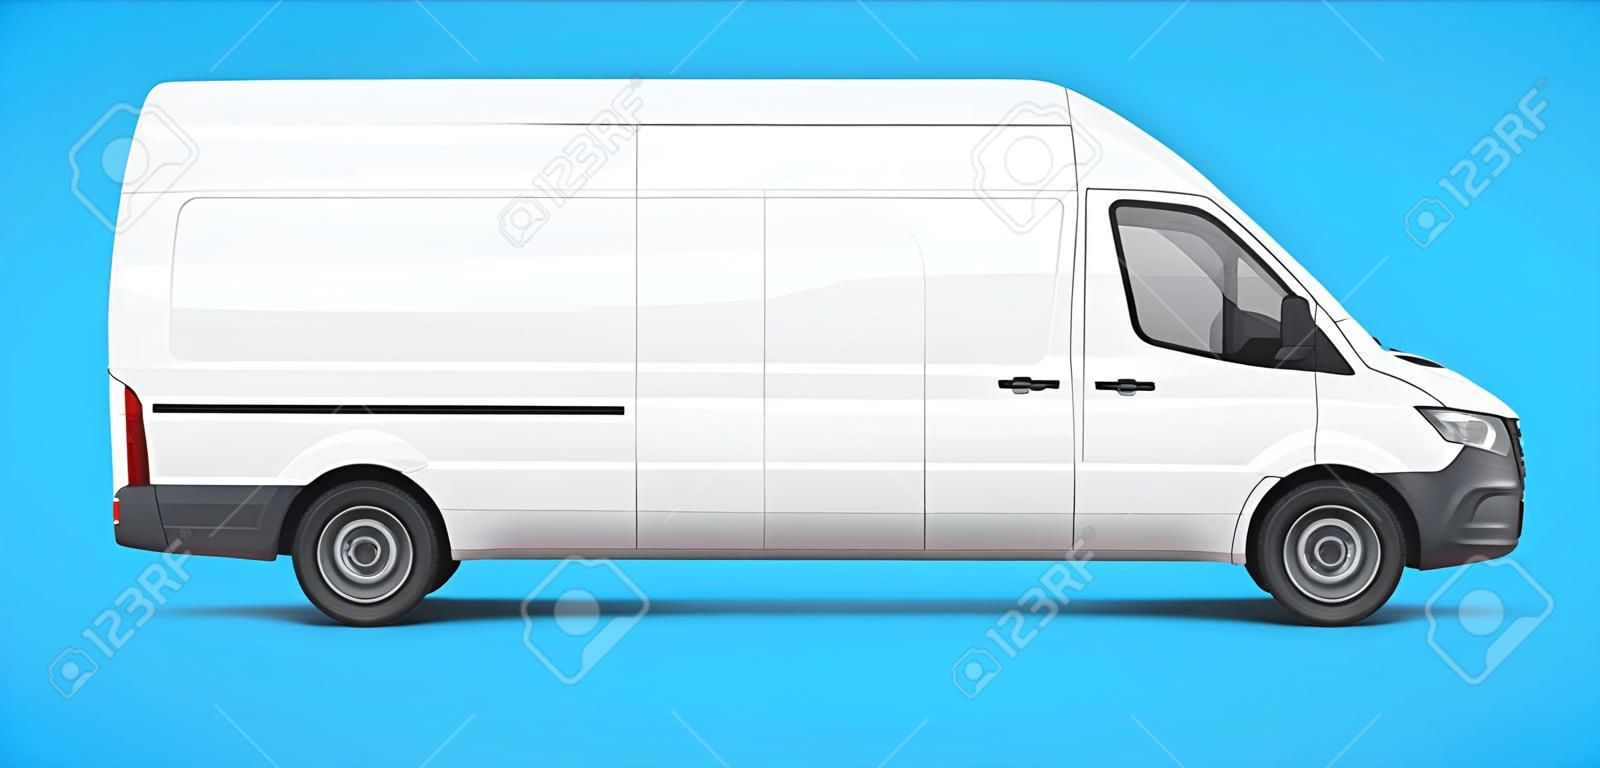 Une simple camionnette blanche pour la logistique. Illustration vectorielle de branding et d'identité.